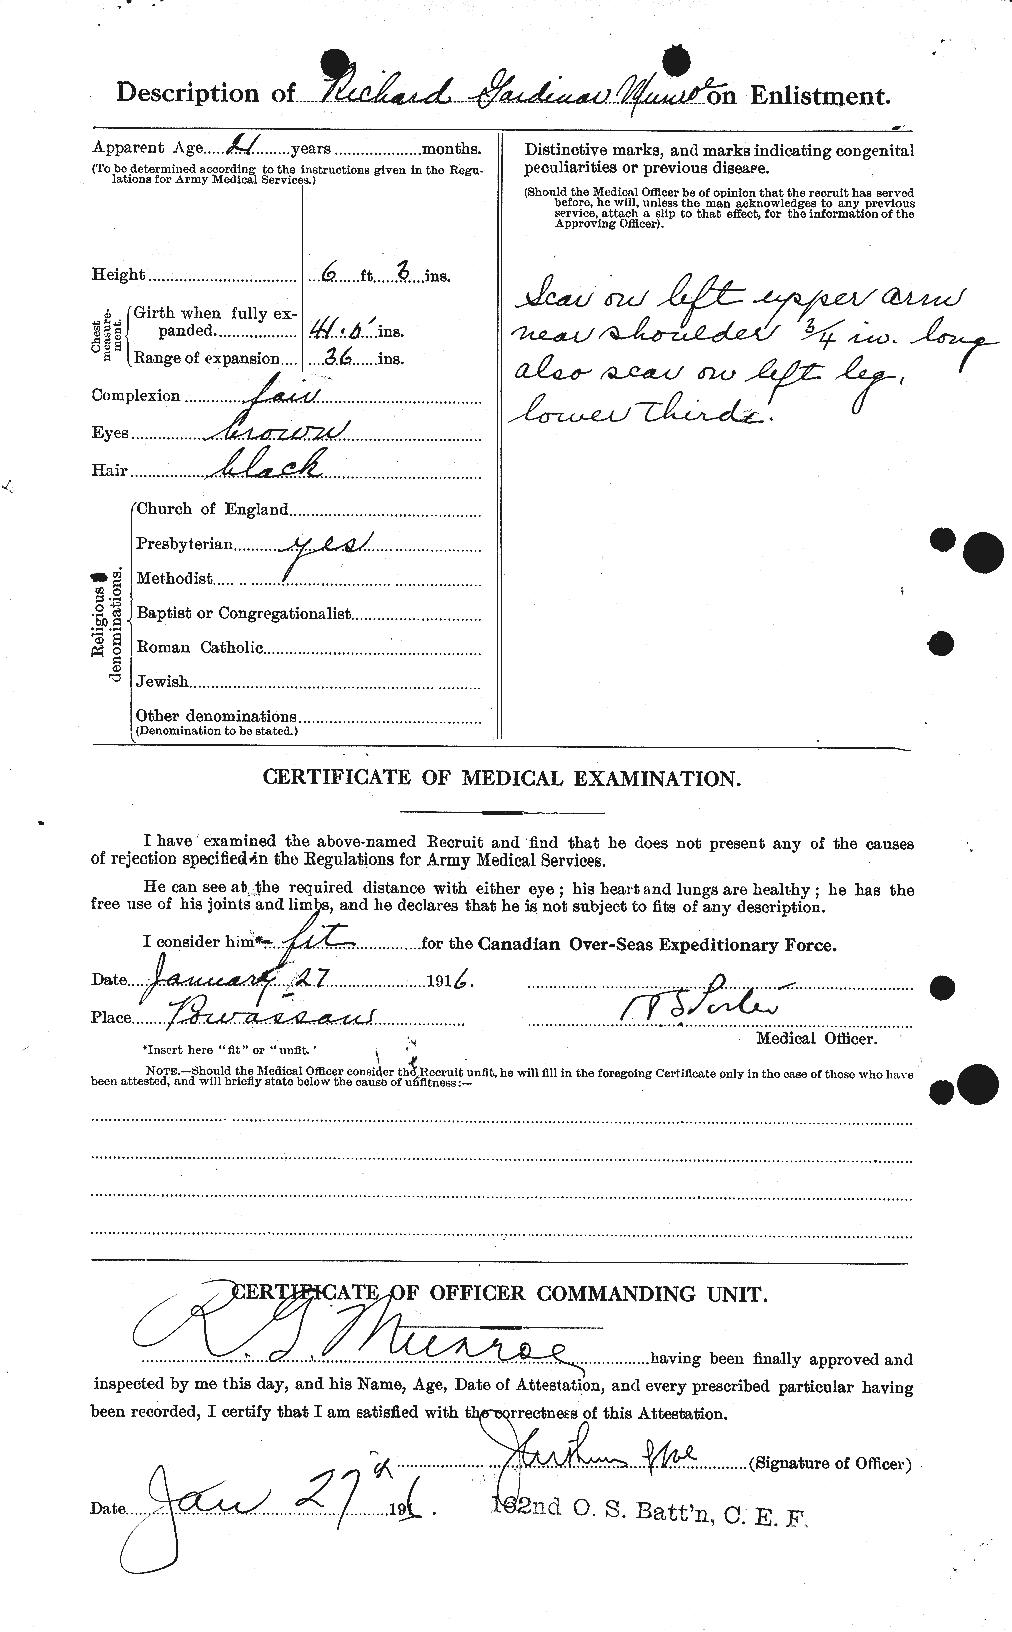 Dossiers du Personnel de la Première Guerre mondiale - CEC 515574b